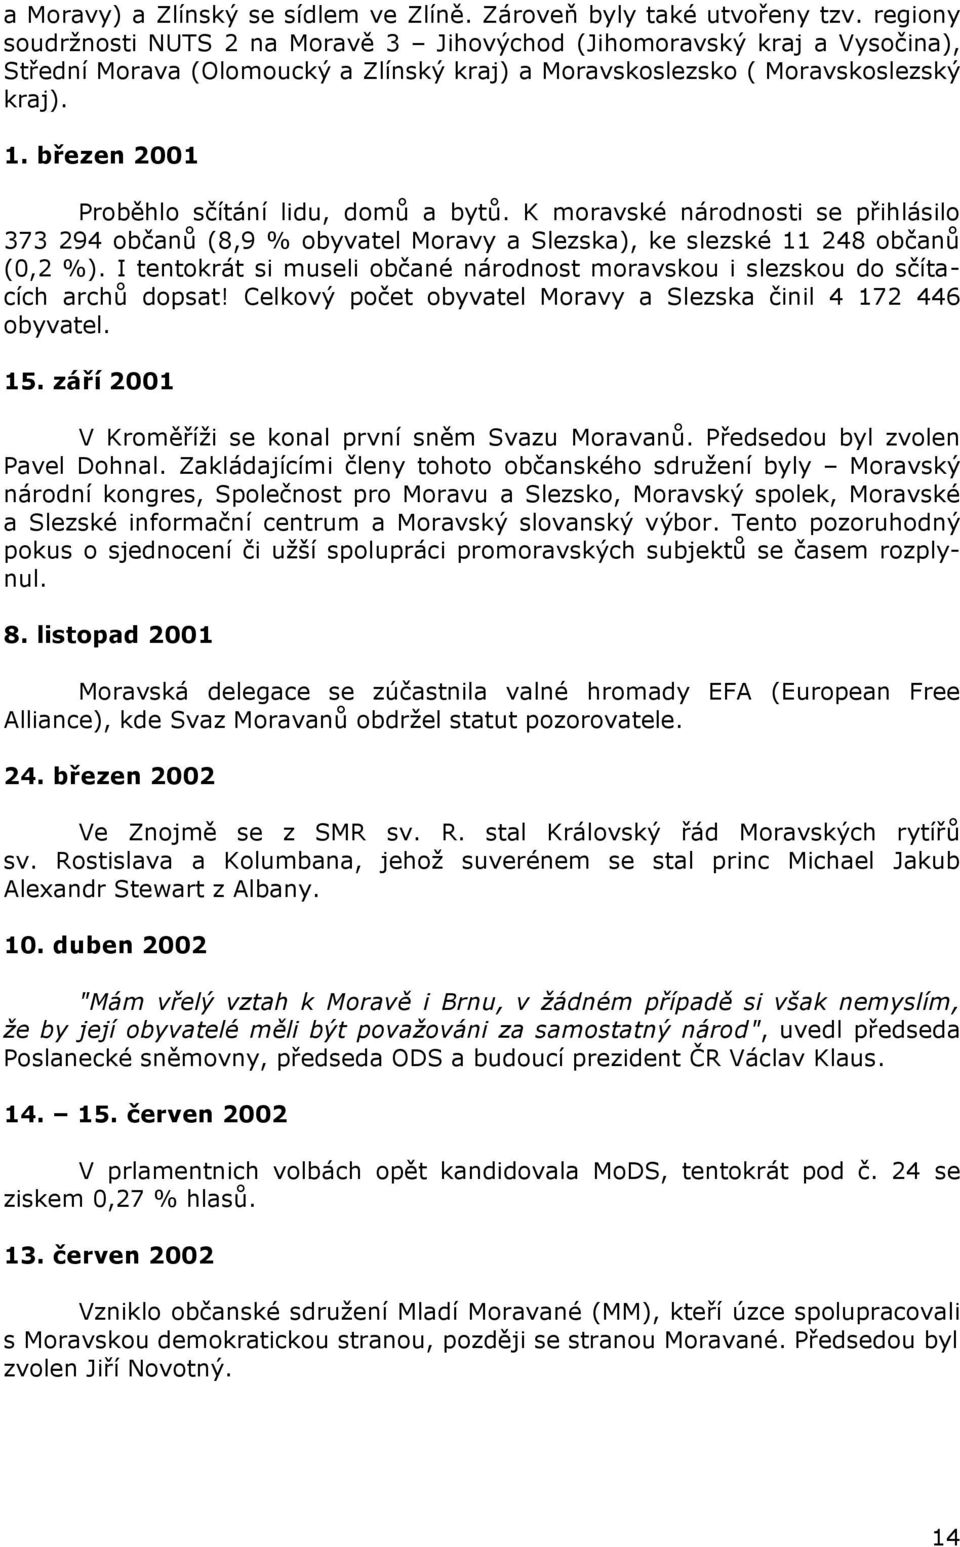 březen 2001 Proběhlo sčítání lidu, domů a bytů. K moravské národnosti se přihlásilo 373 294 občanů (8,9 % obyvatel Moravy a Slezska), ke slezské 11 248 občanů (0,2 %).